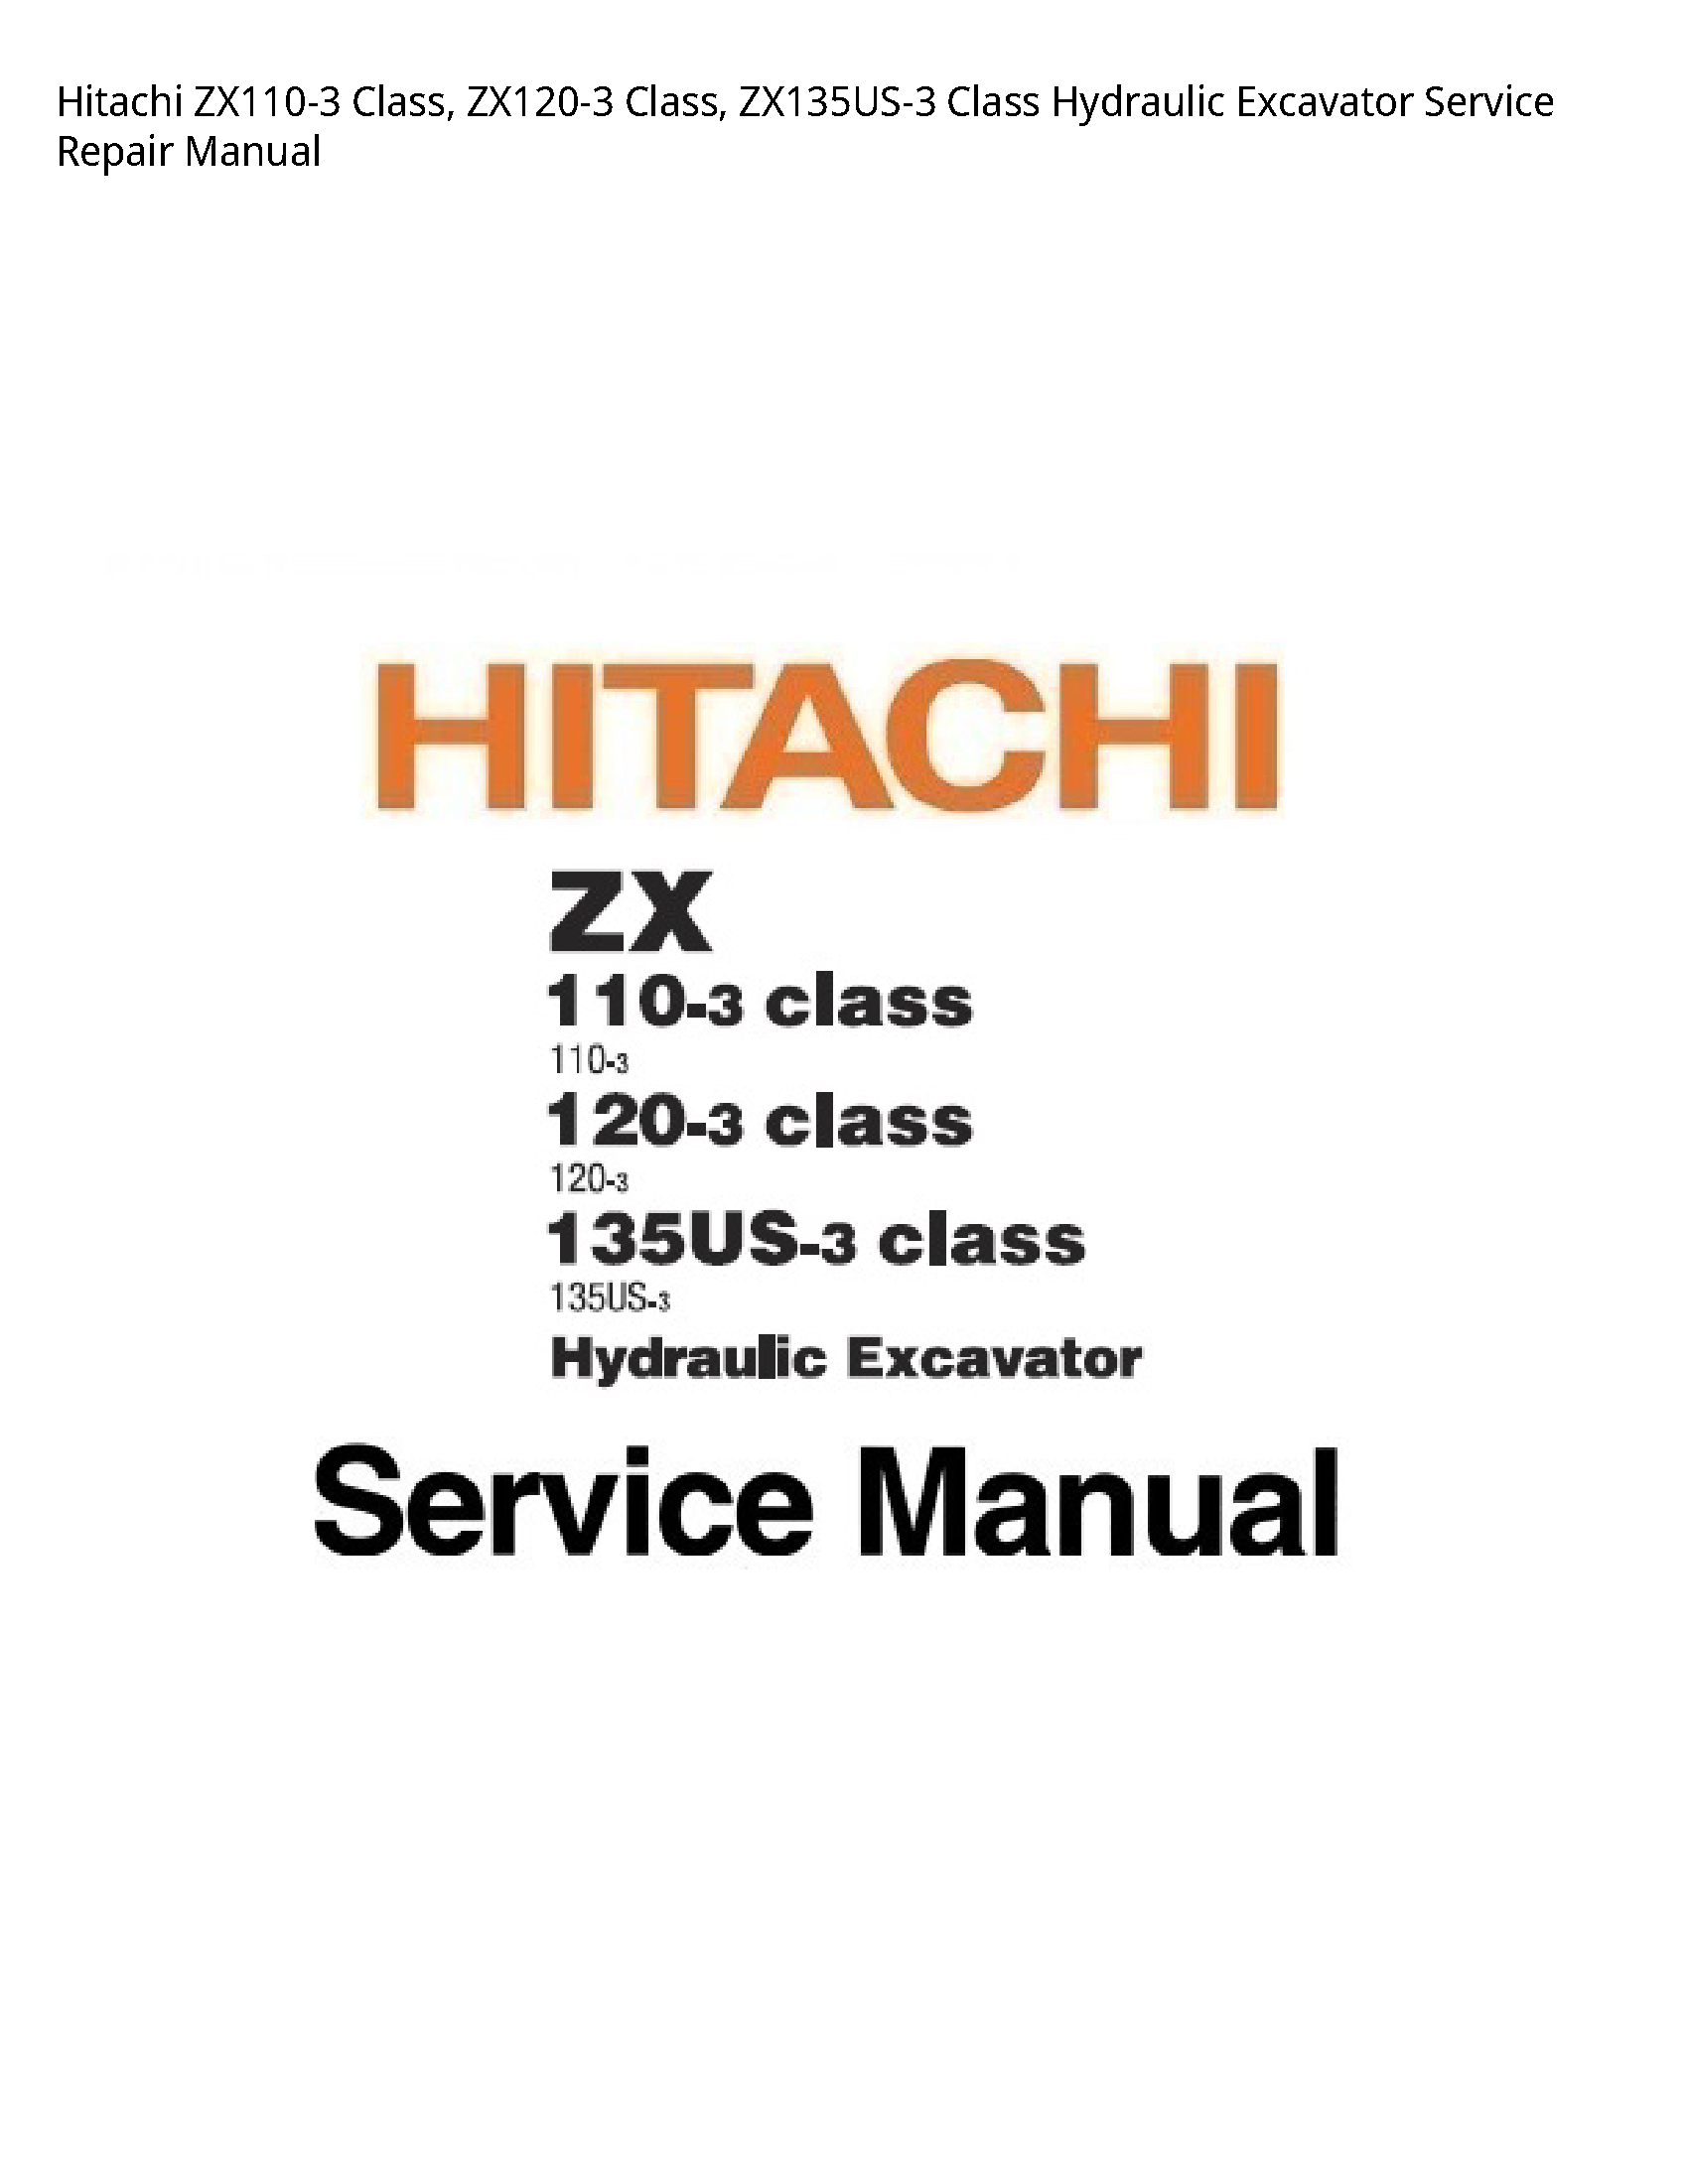 Hitachi ZX110-3 Class manual